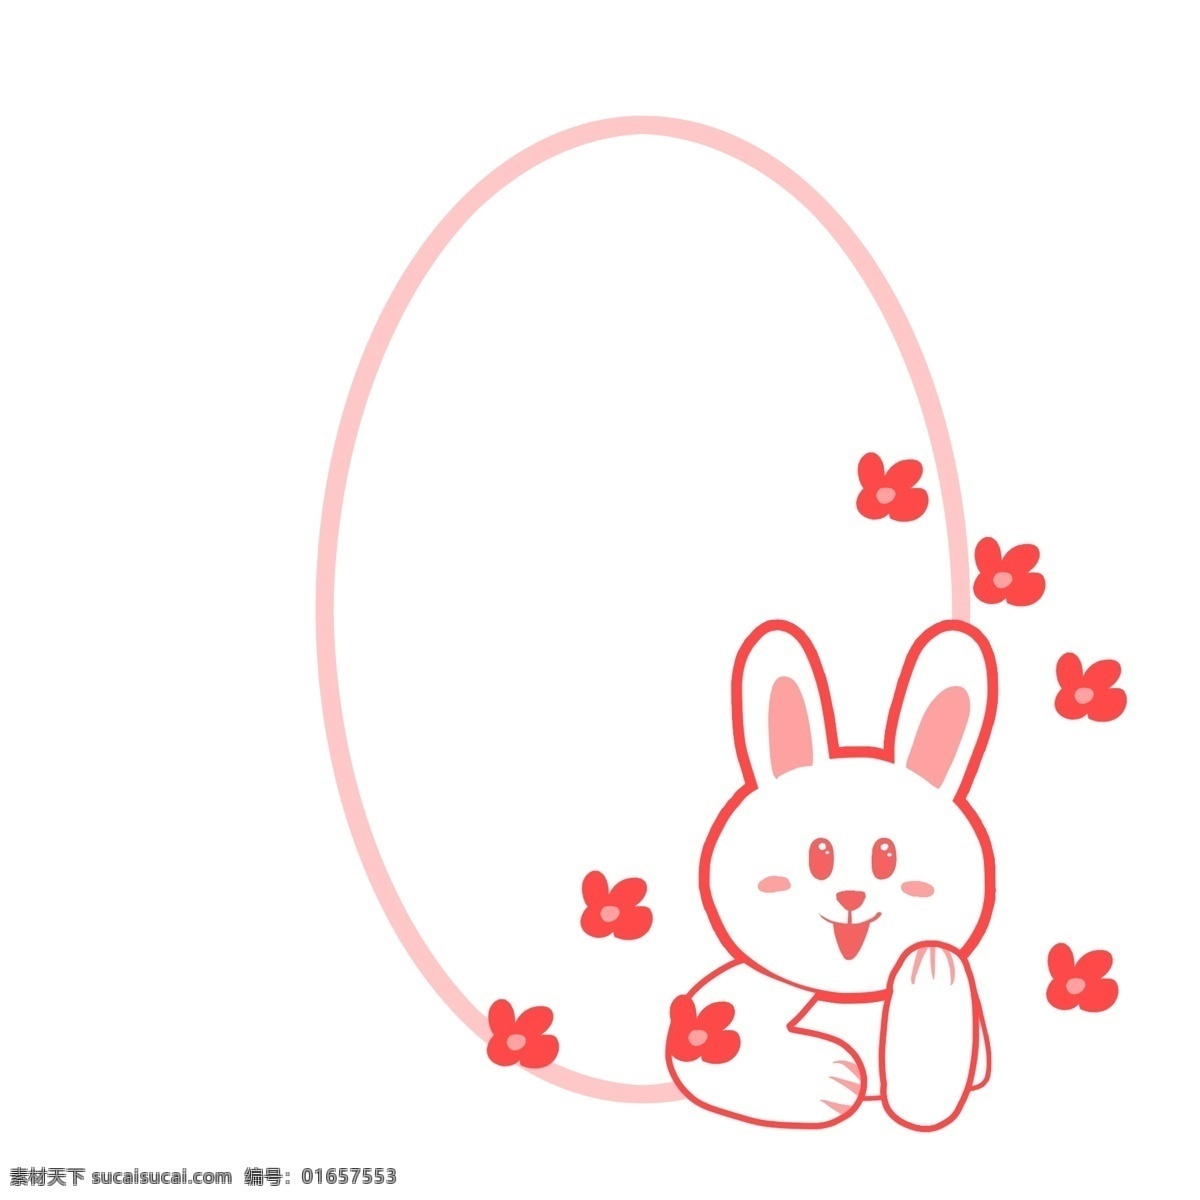 可爱 小 兔子 边框 可爱的边框 小兔子边框 粉色 椭圆形 小动物边框 红色花朵 花卉 边框装饰